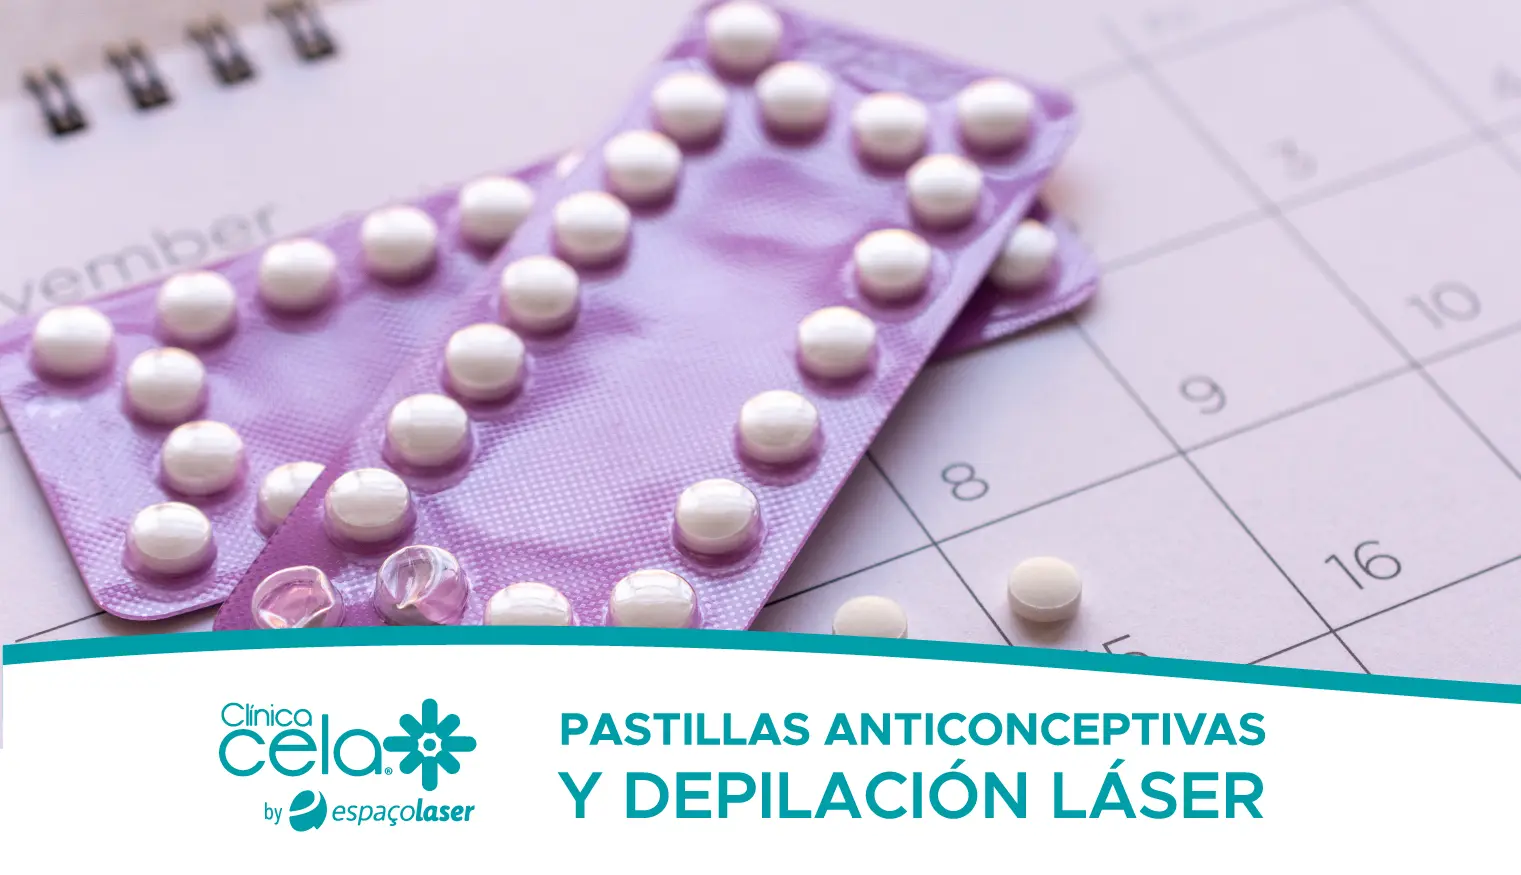 Pastillas anticonceptivas y depilación láser